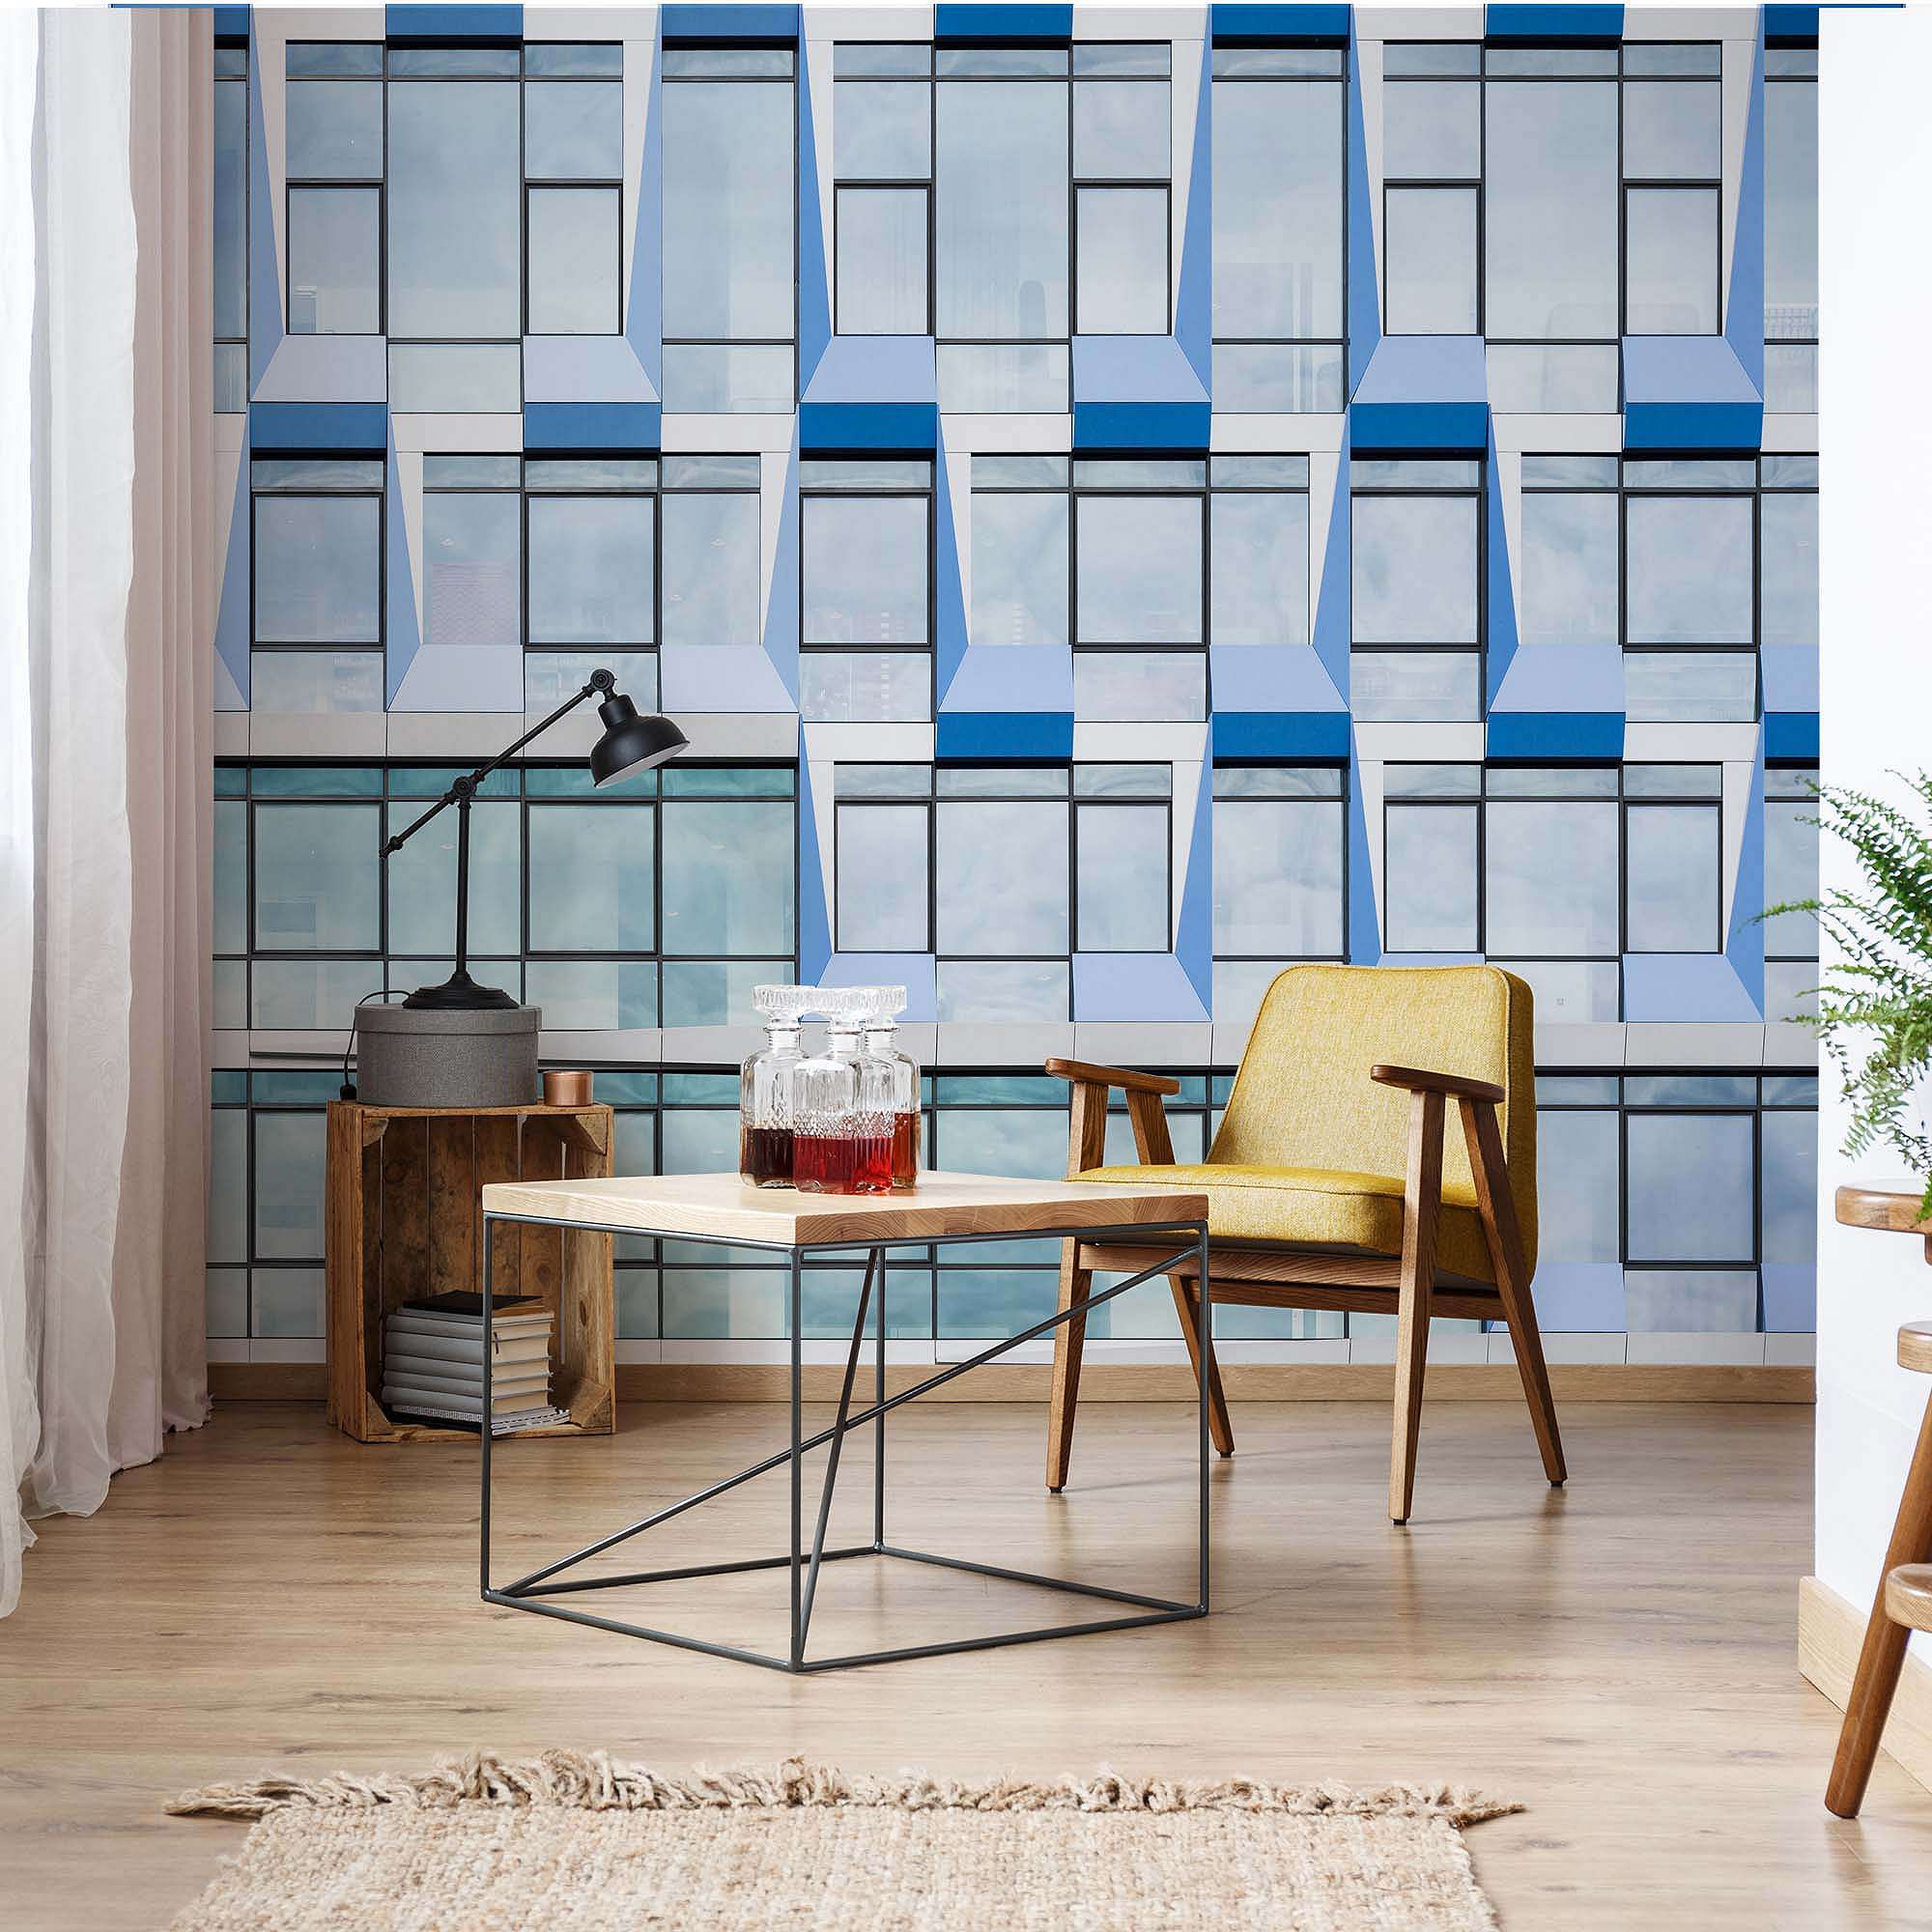 Fali poszter kék ablakokkal minimalista stílusban